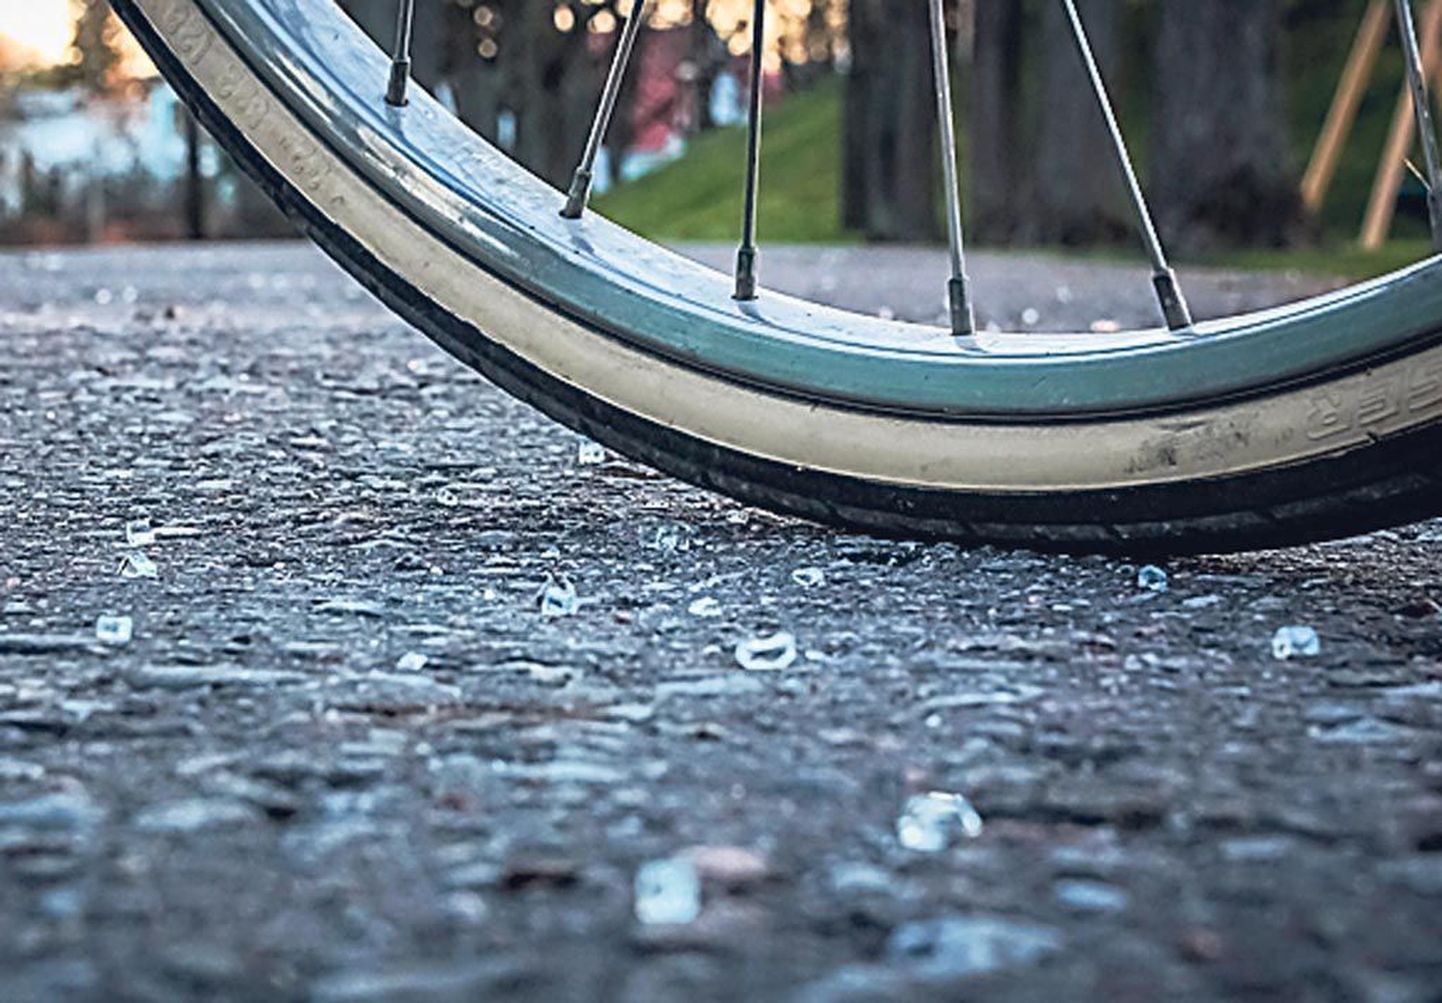 Klaasikillud Pärnu tänavatel pole sugugi harv nähtus, ööpäevas puruneb selle läbi ligi 60 rattakummi.